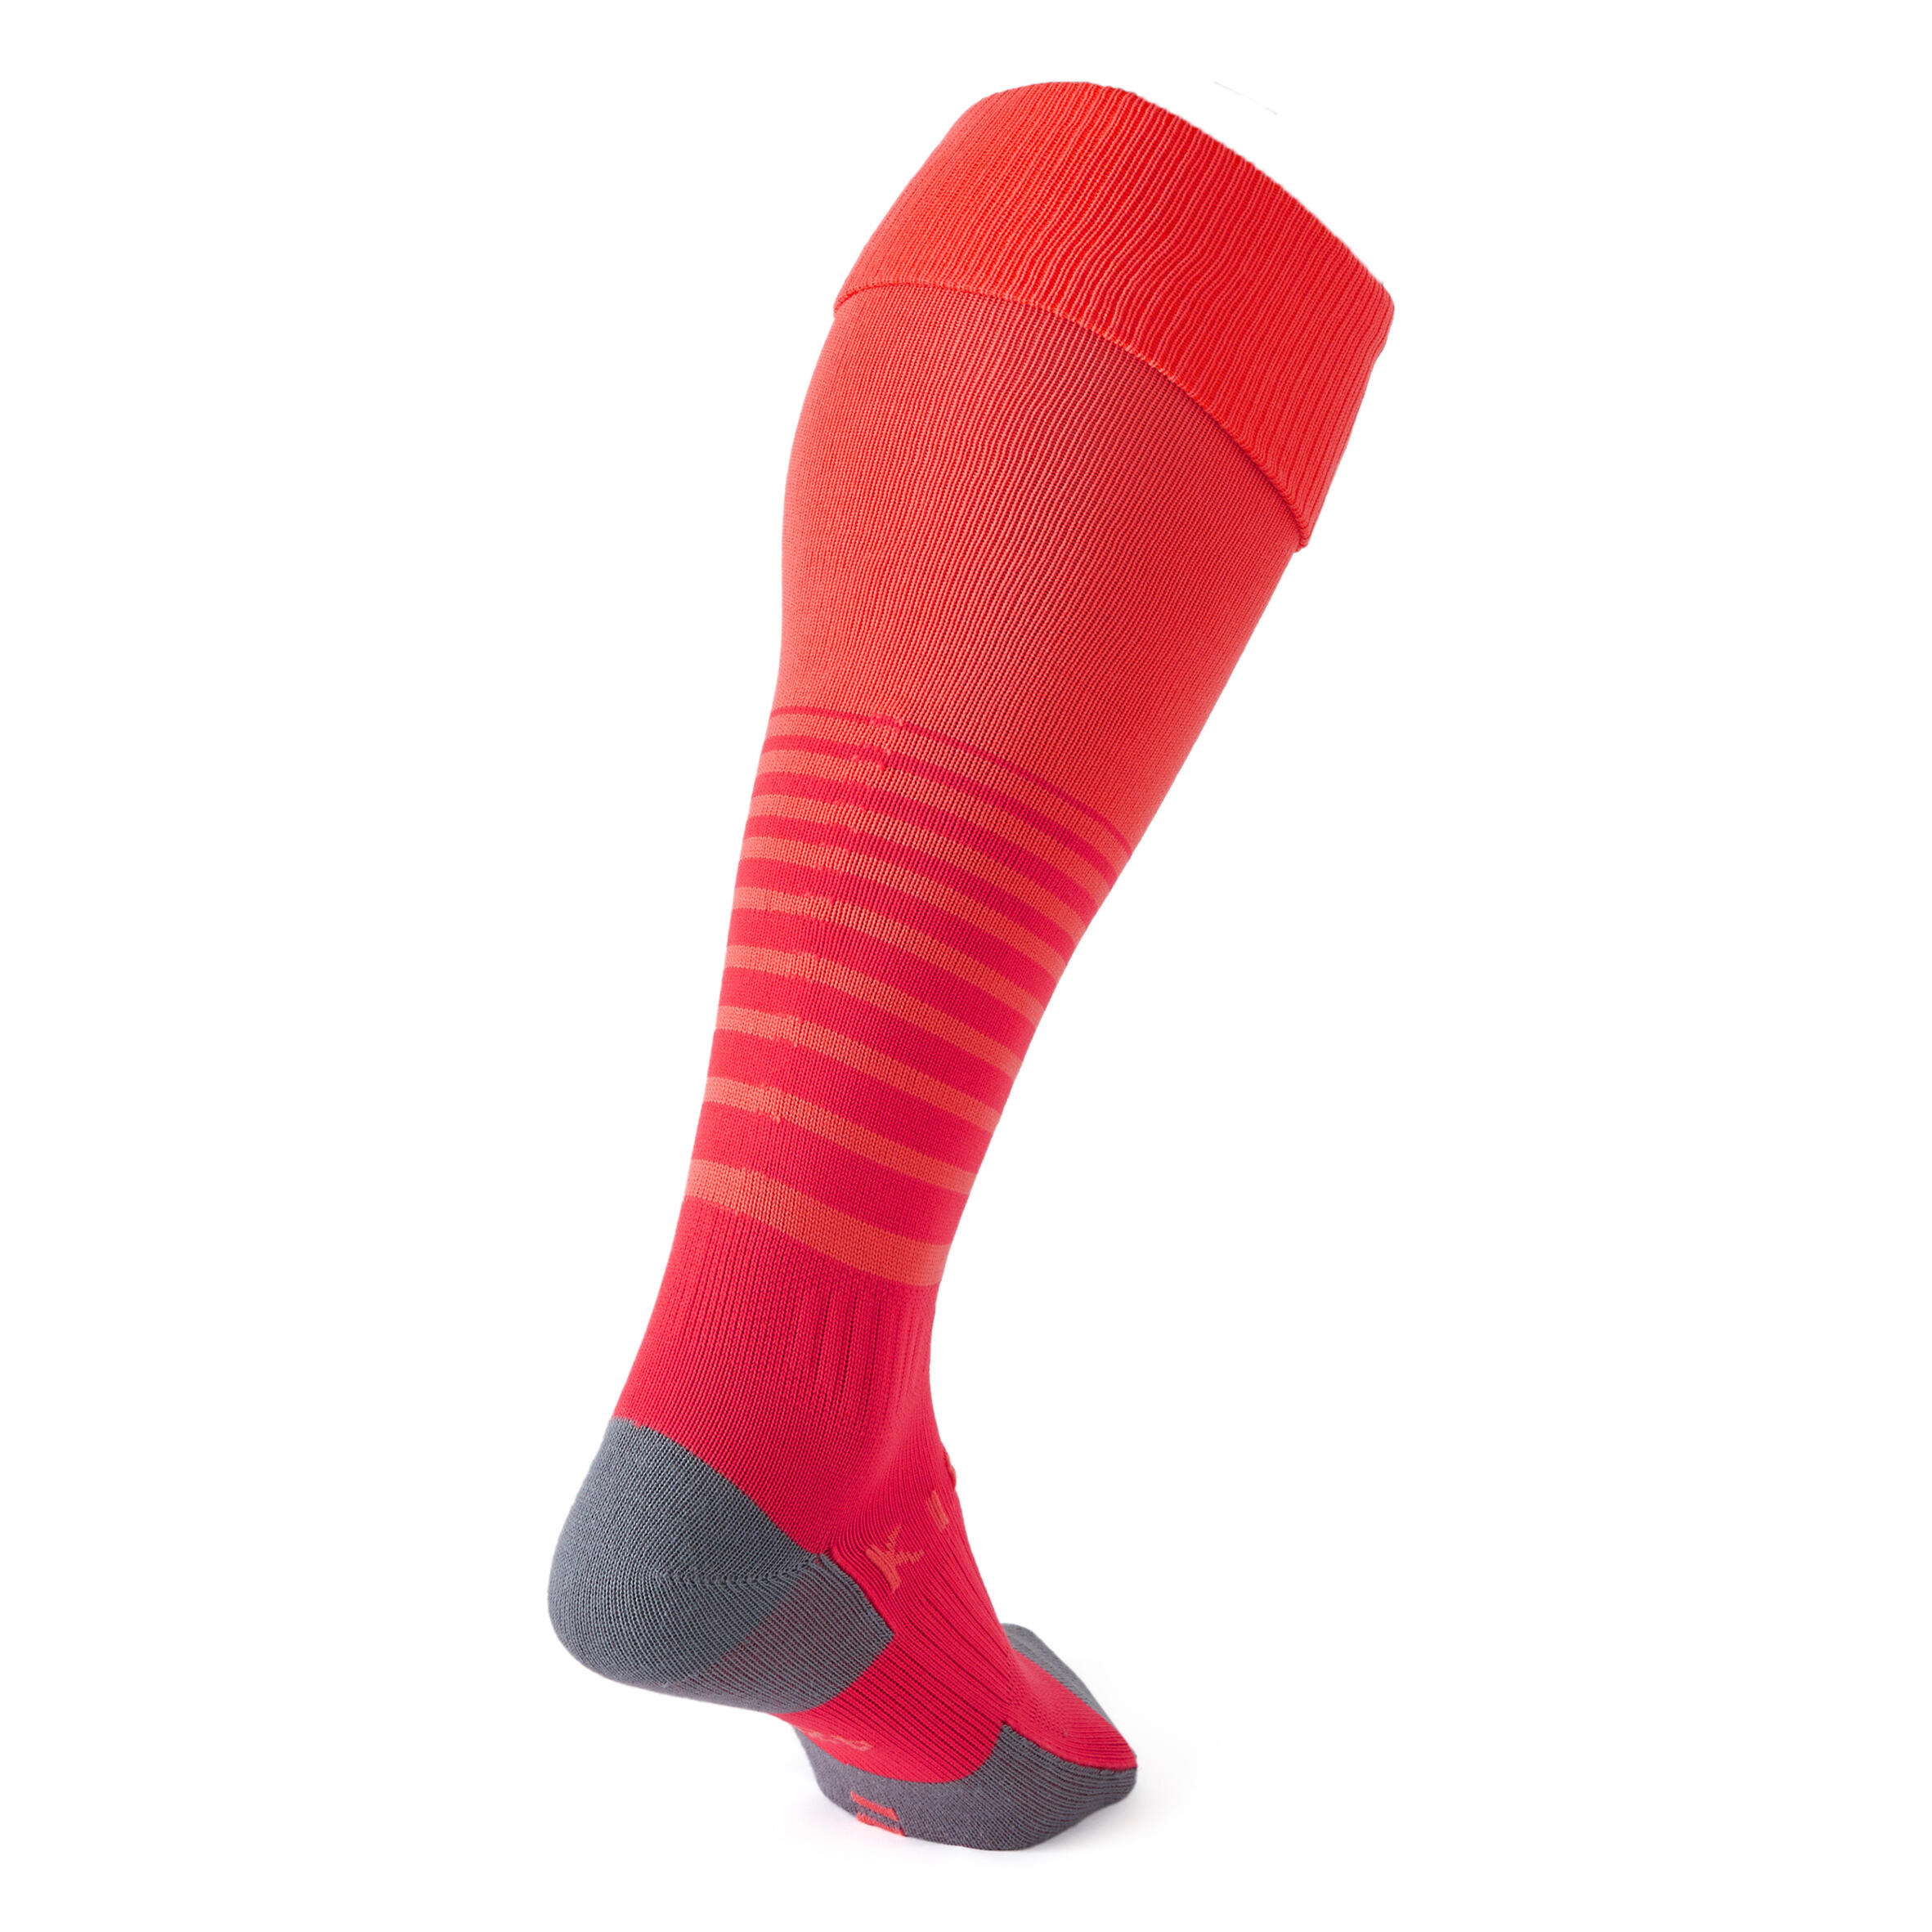 Traxium Football Socks - Red/Pink 2/3